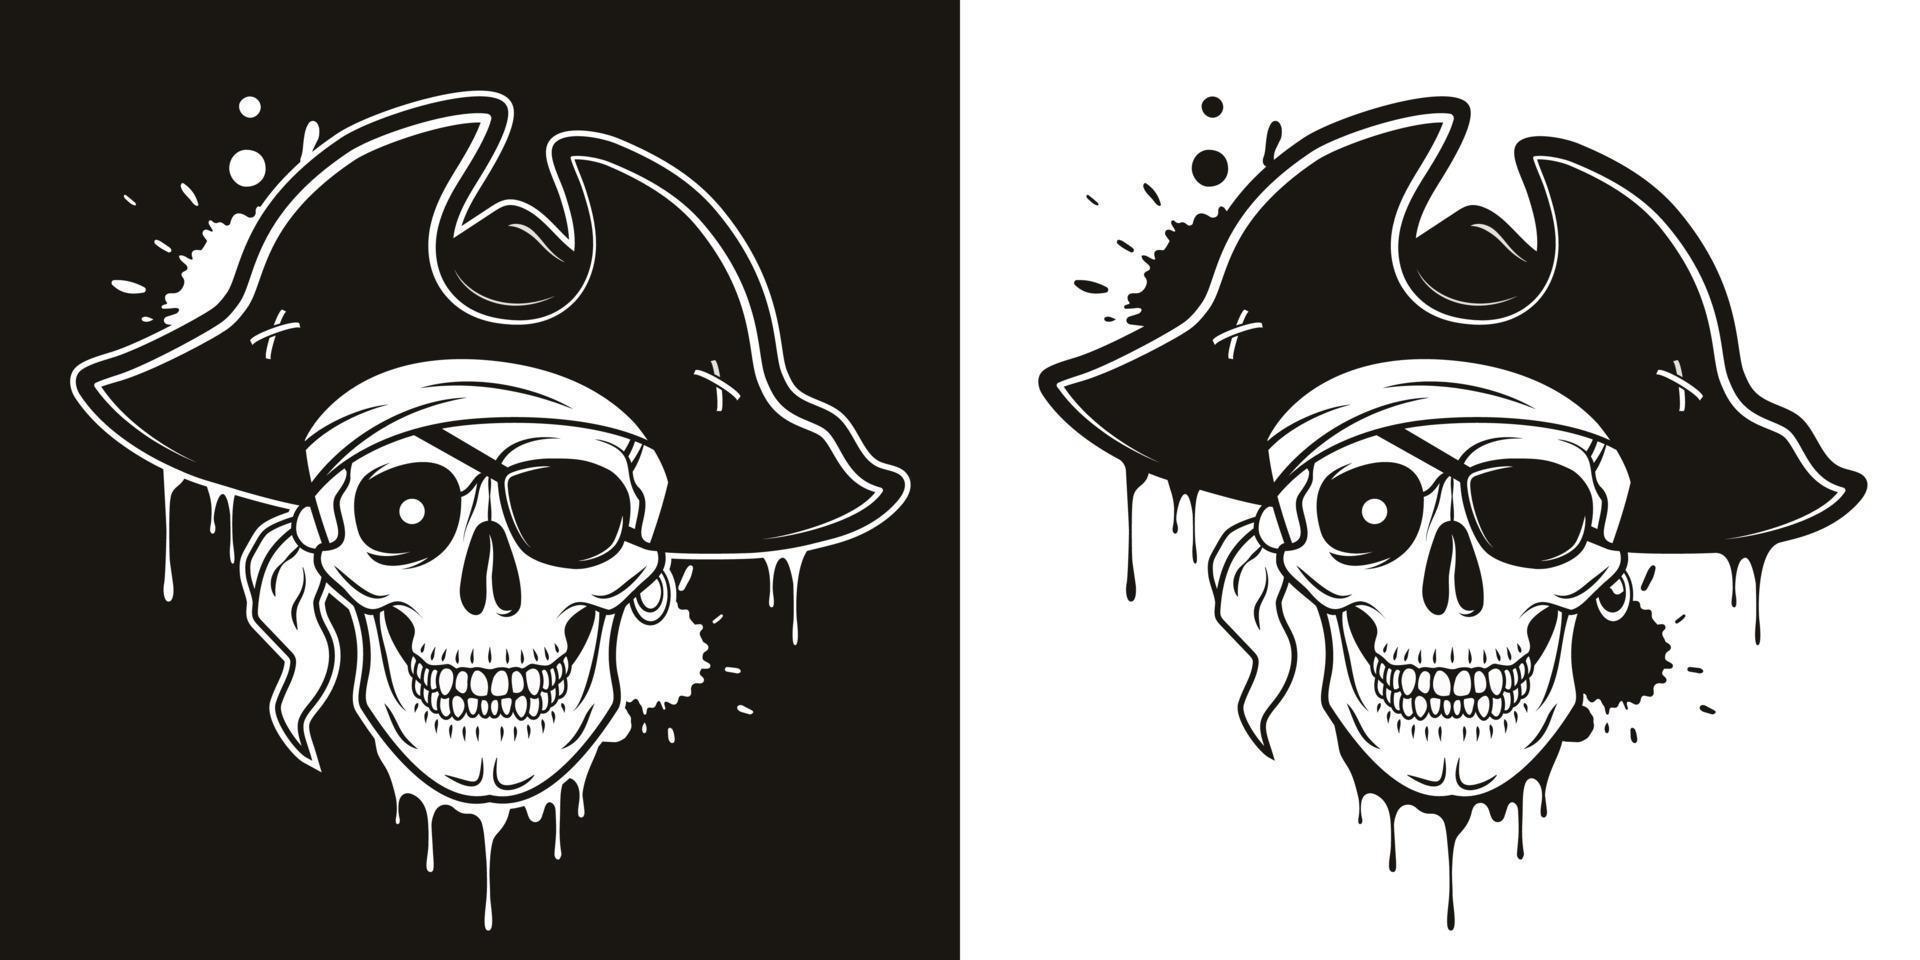 teschio pirata con benda sull'occhio, cappello, bandana, occhio luminoso. illustrazione del fumetto disegnata a mano vettoriale isolata su sfondo bianco e nero